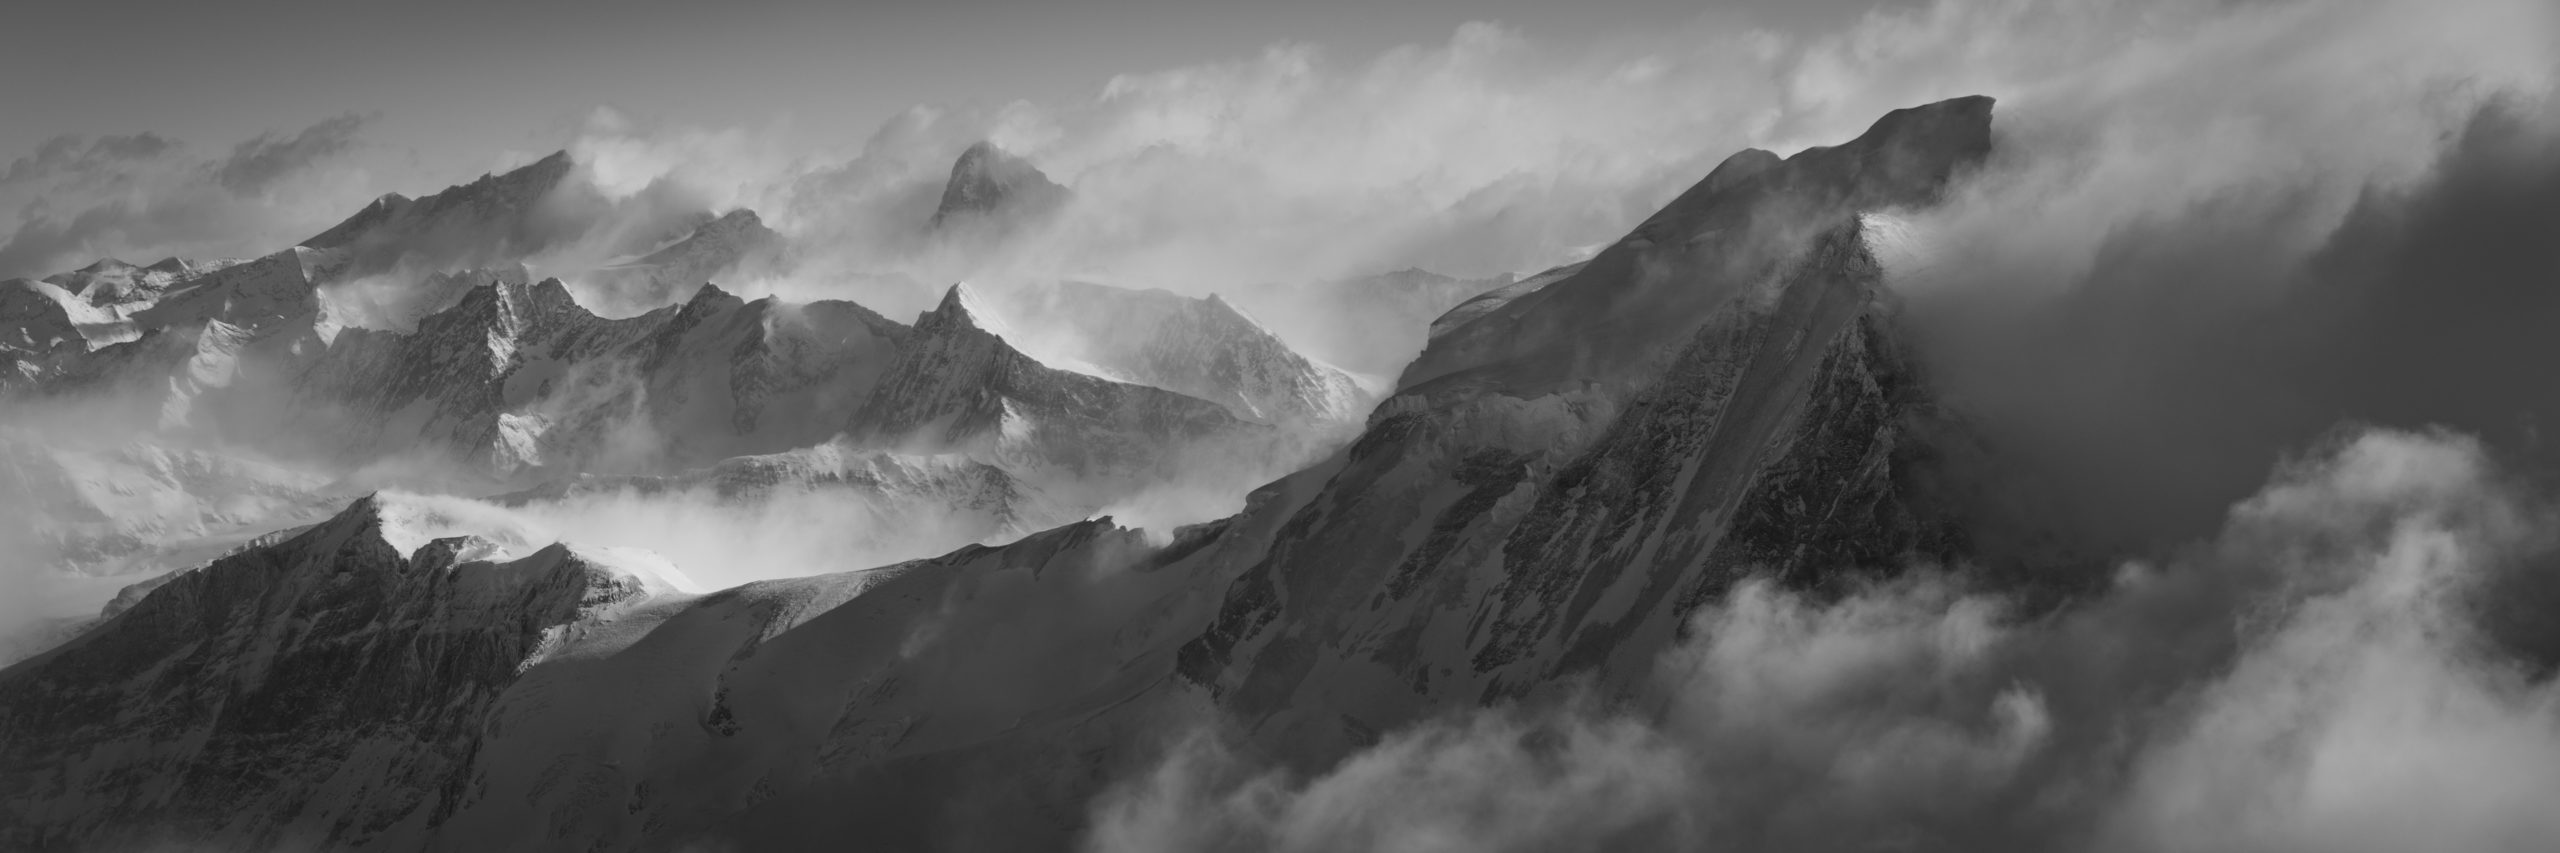 Bergpanorama Grand Combin - schwarz-weiss Bergbild der Walliser Alpen